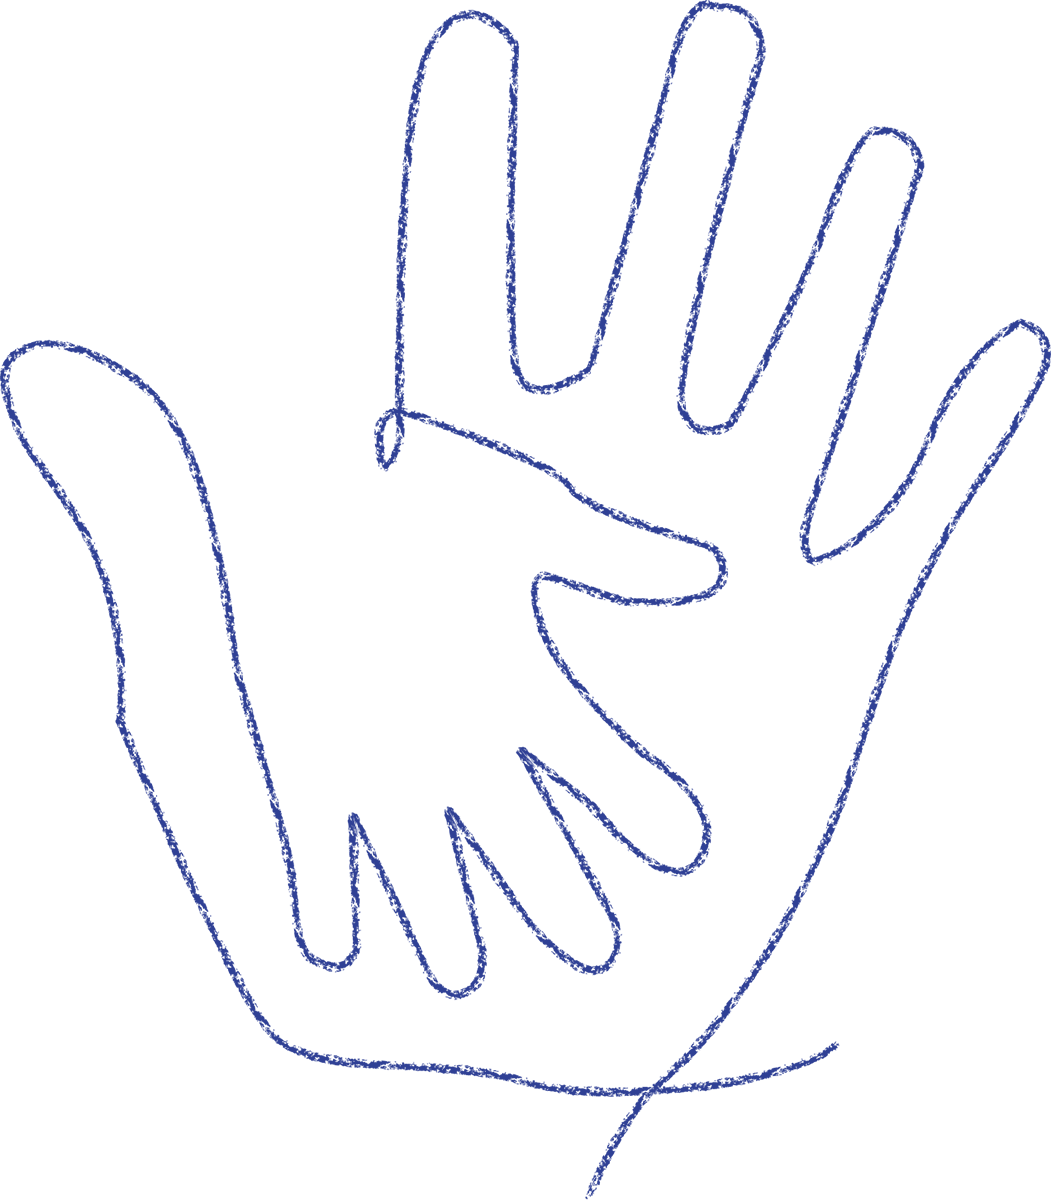 Abbildung einer Kinderhand, die die Hand der Mutter berührt